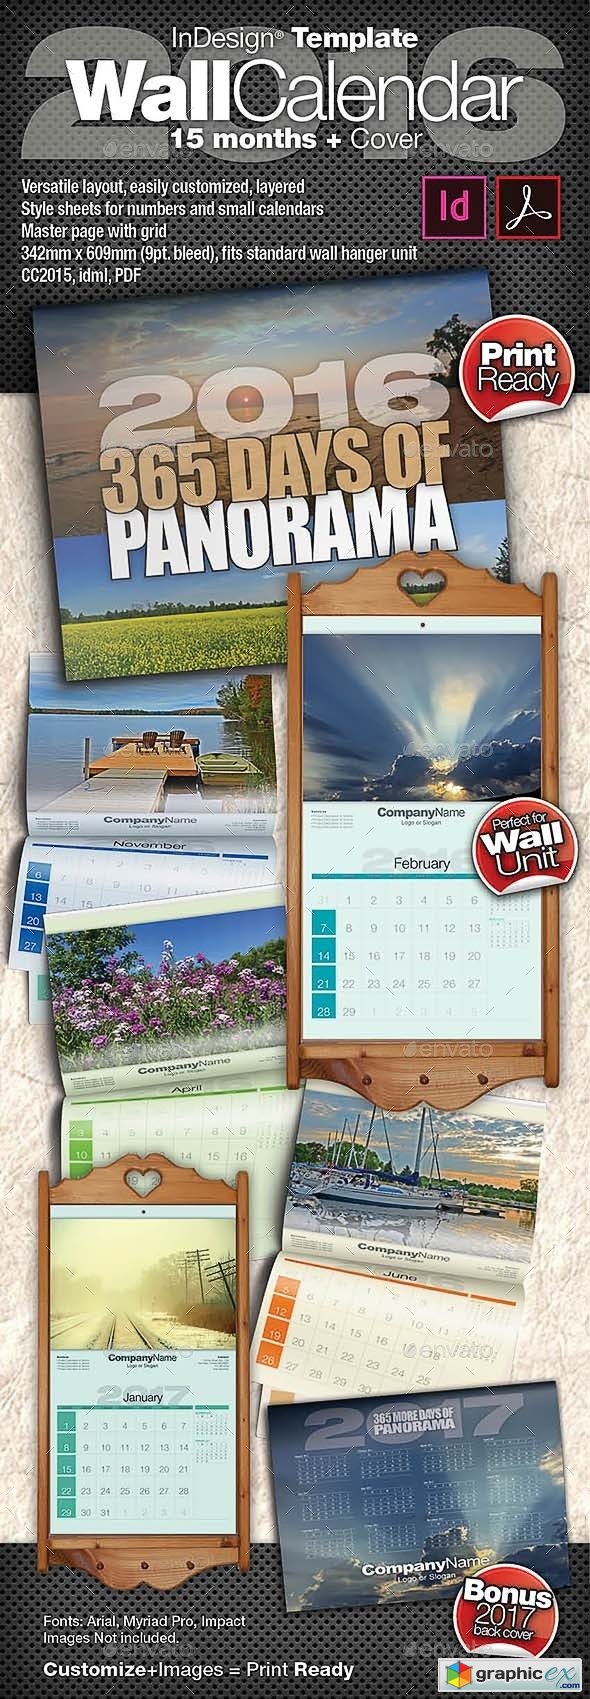 2016 Wall Calendar - 15 Months + Cover